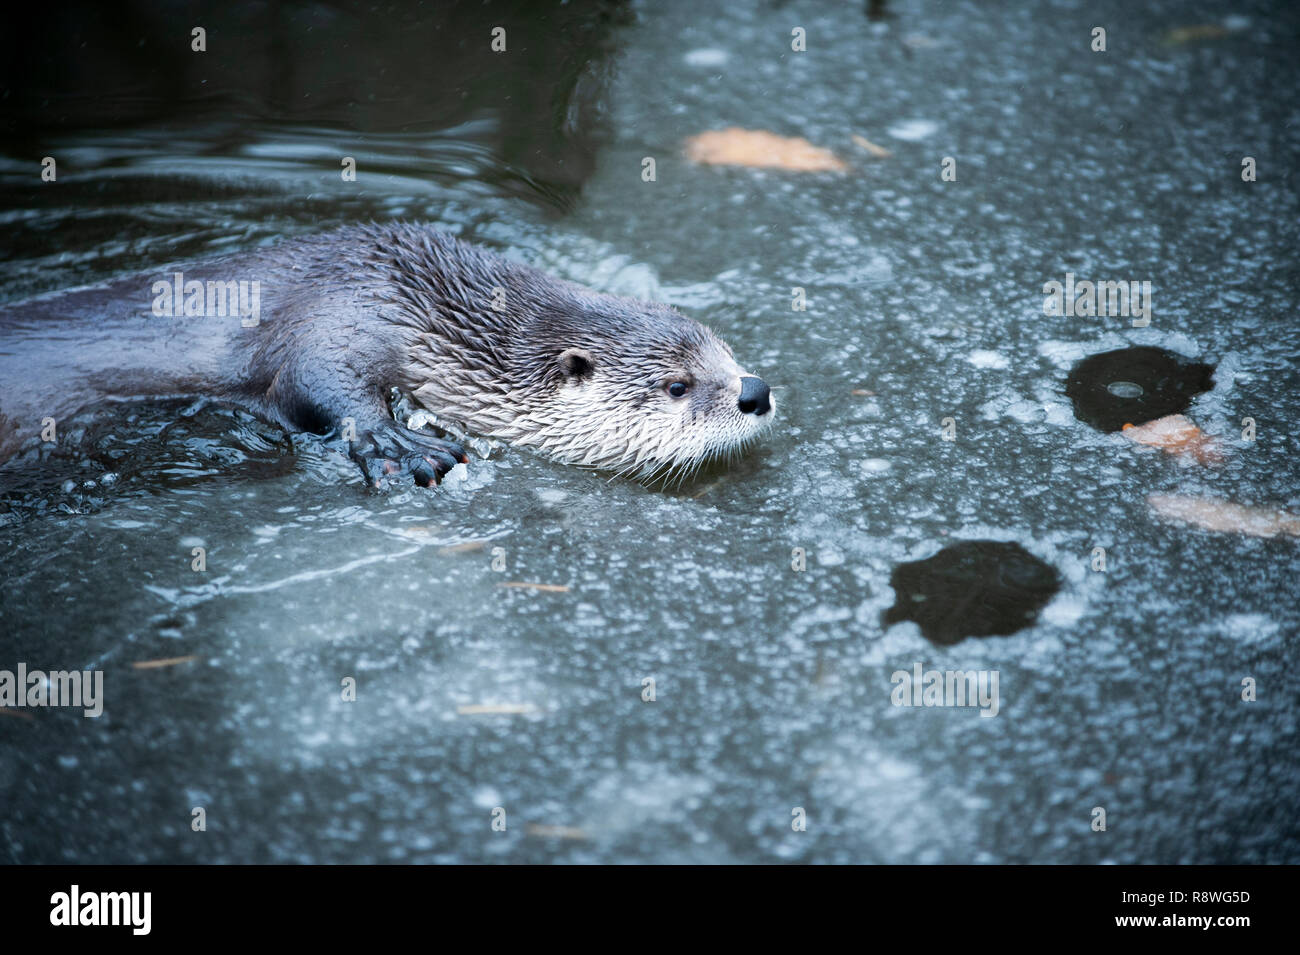 Cute Otter Schwimmen im kalten Wasser teilweise bedeckt von Eis. Stockfoto